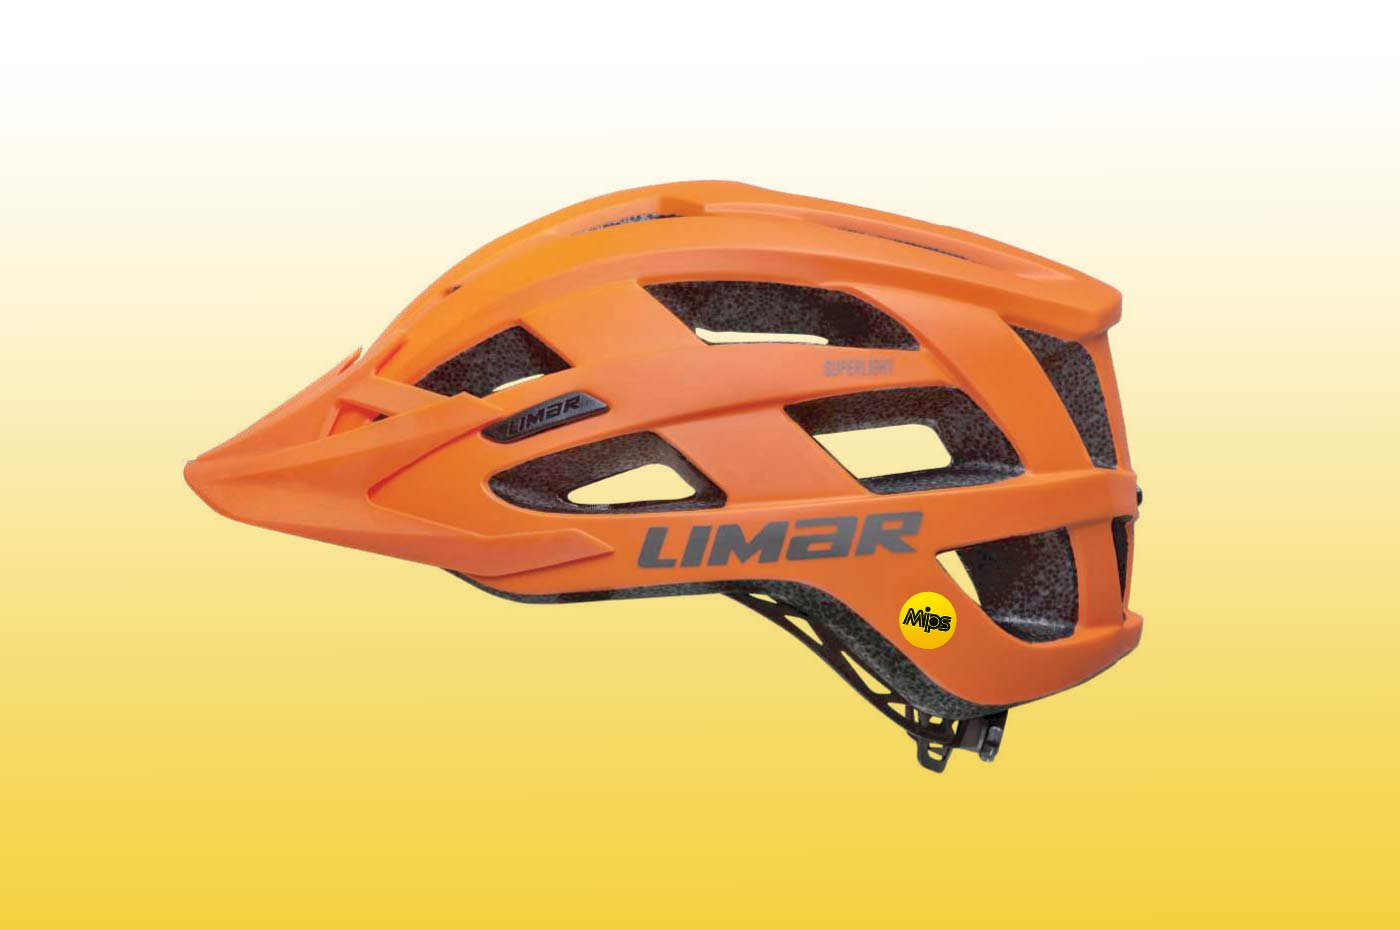 Limar Alben mountain bike helmet 